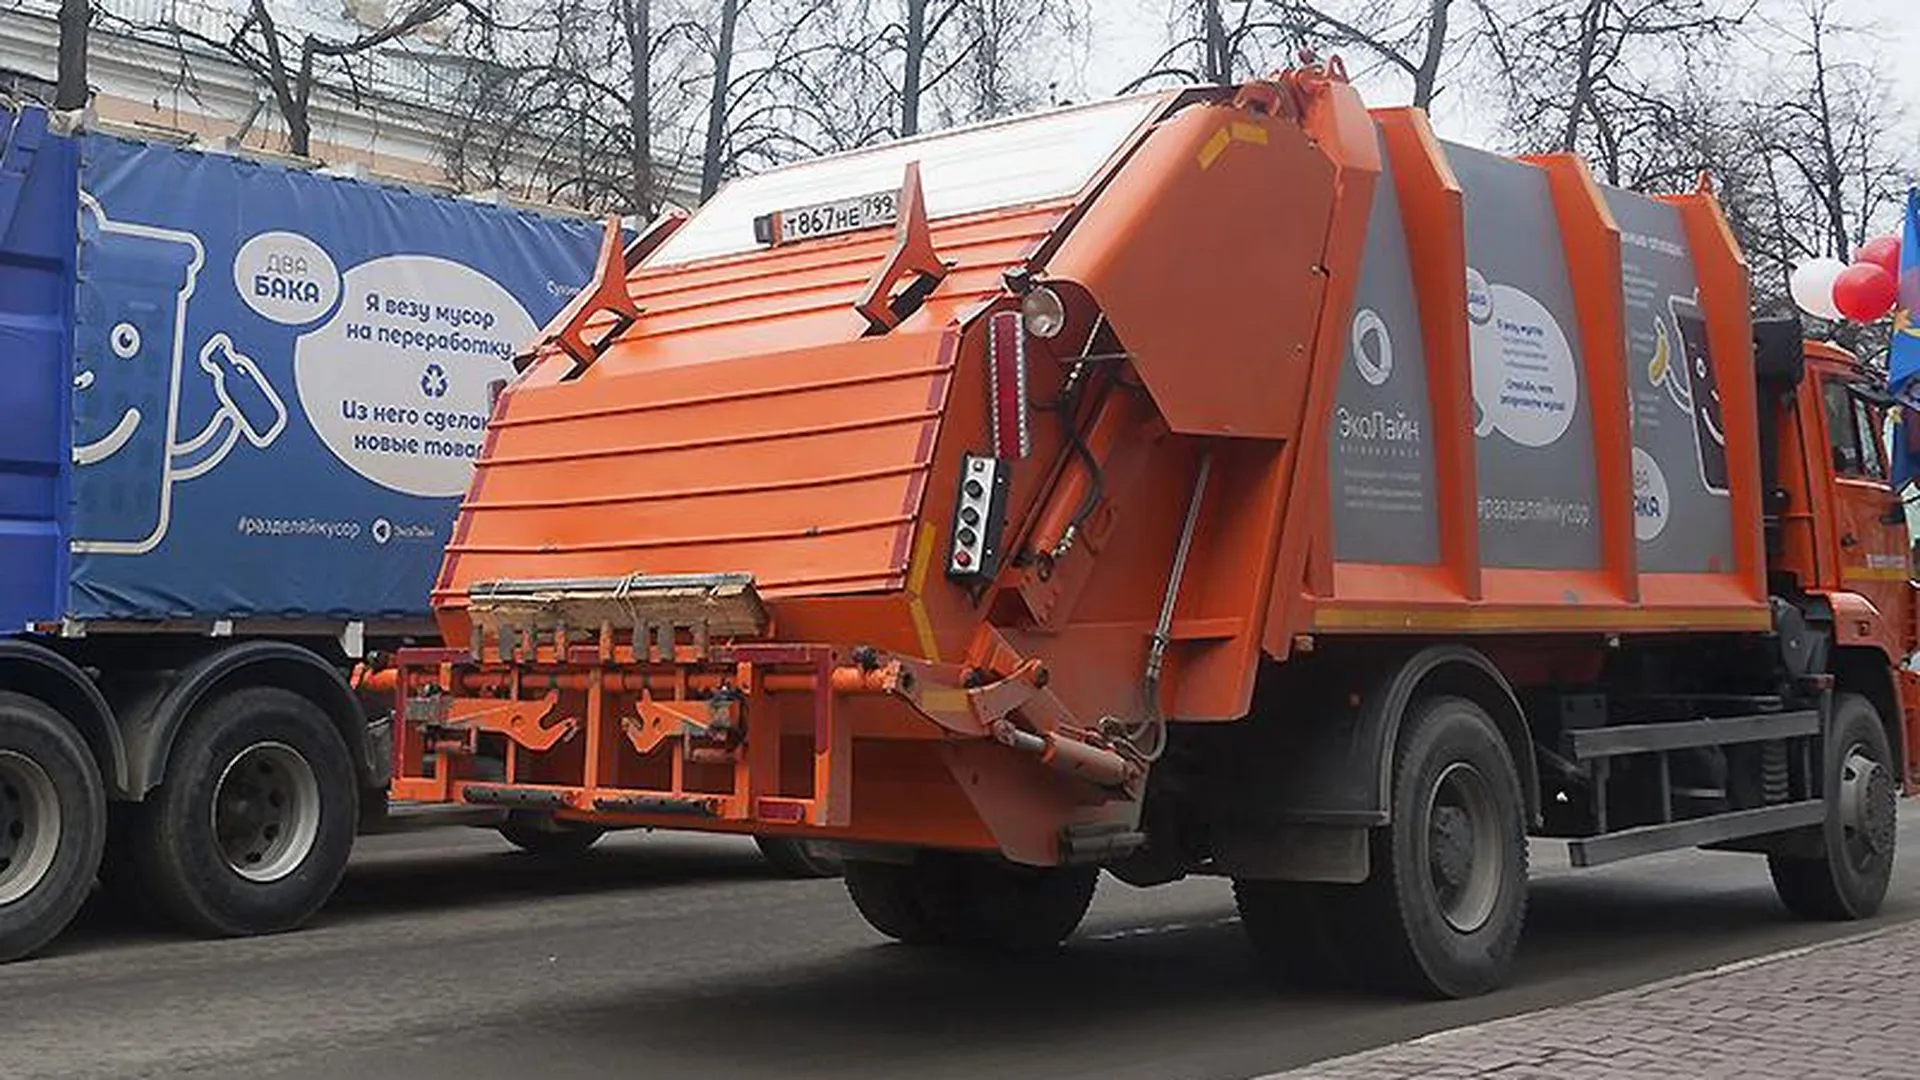 Водители мусоровозов рассказали, как управлять гигантскими машинами и находить общий язык с городскими жителями